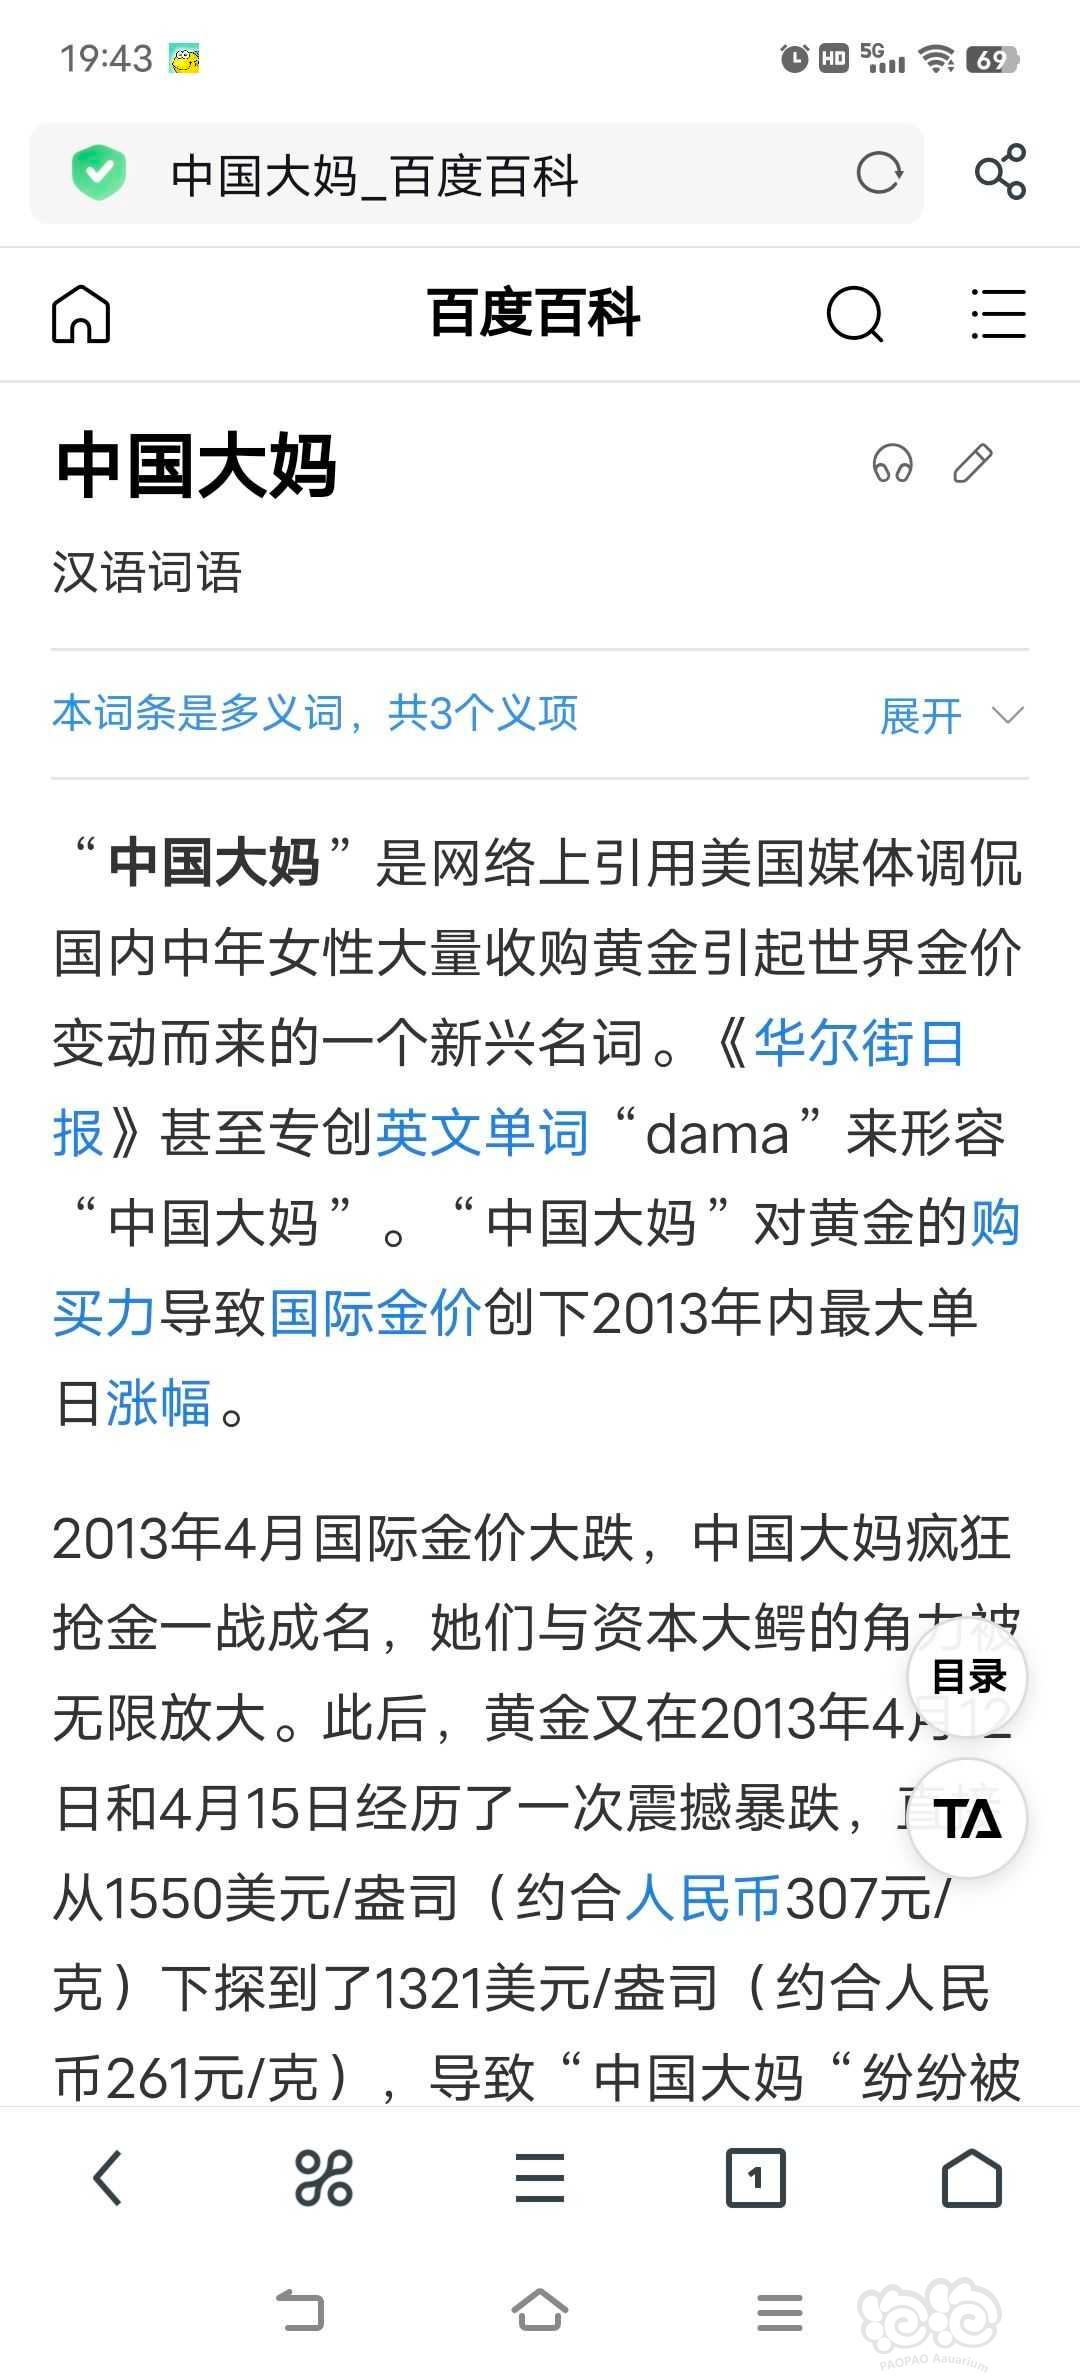 2013年中国大妈也曾经一度显示实力。可惜后面还是被套牢了。-图1